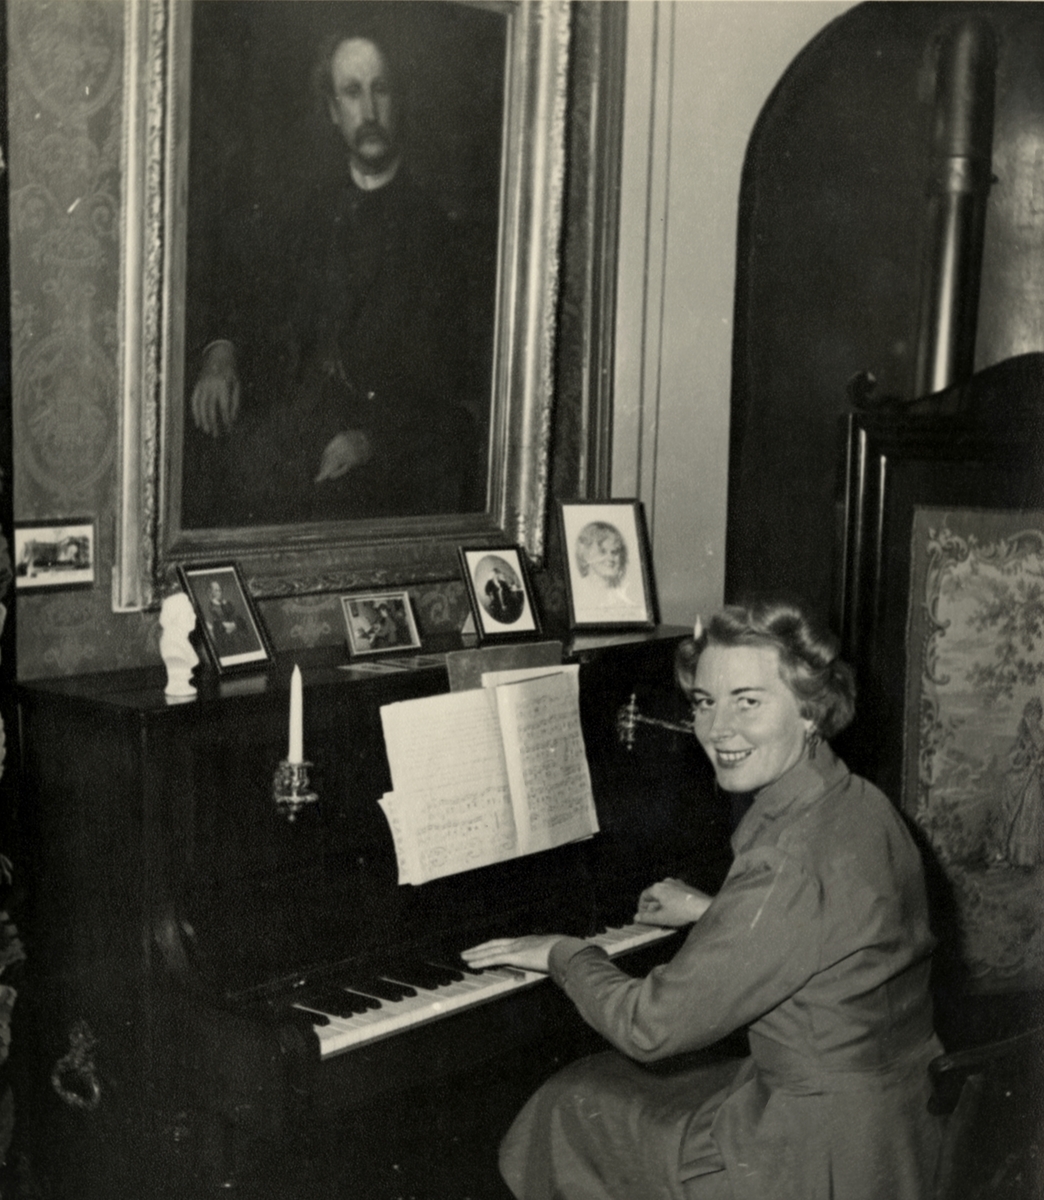 Bilde av en etterkommer etter Thomas Tellefsen. Bilde tatt i forbindelse med åpningen av musikkhistorisk museum.